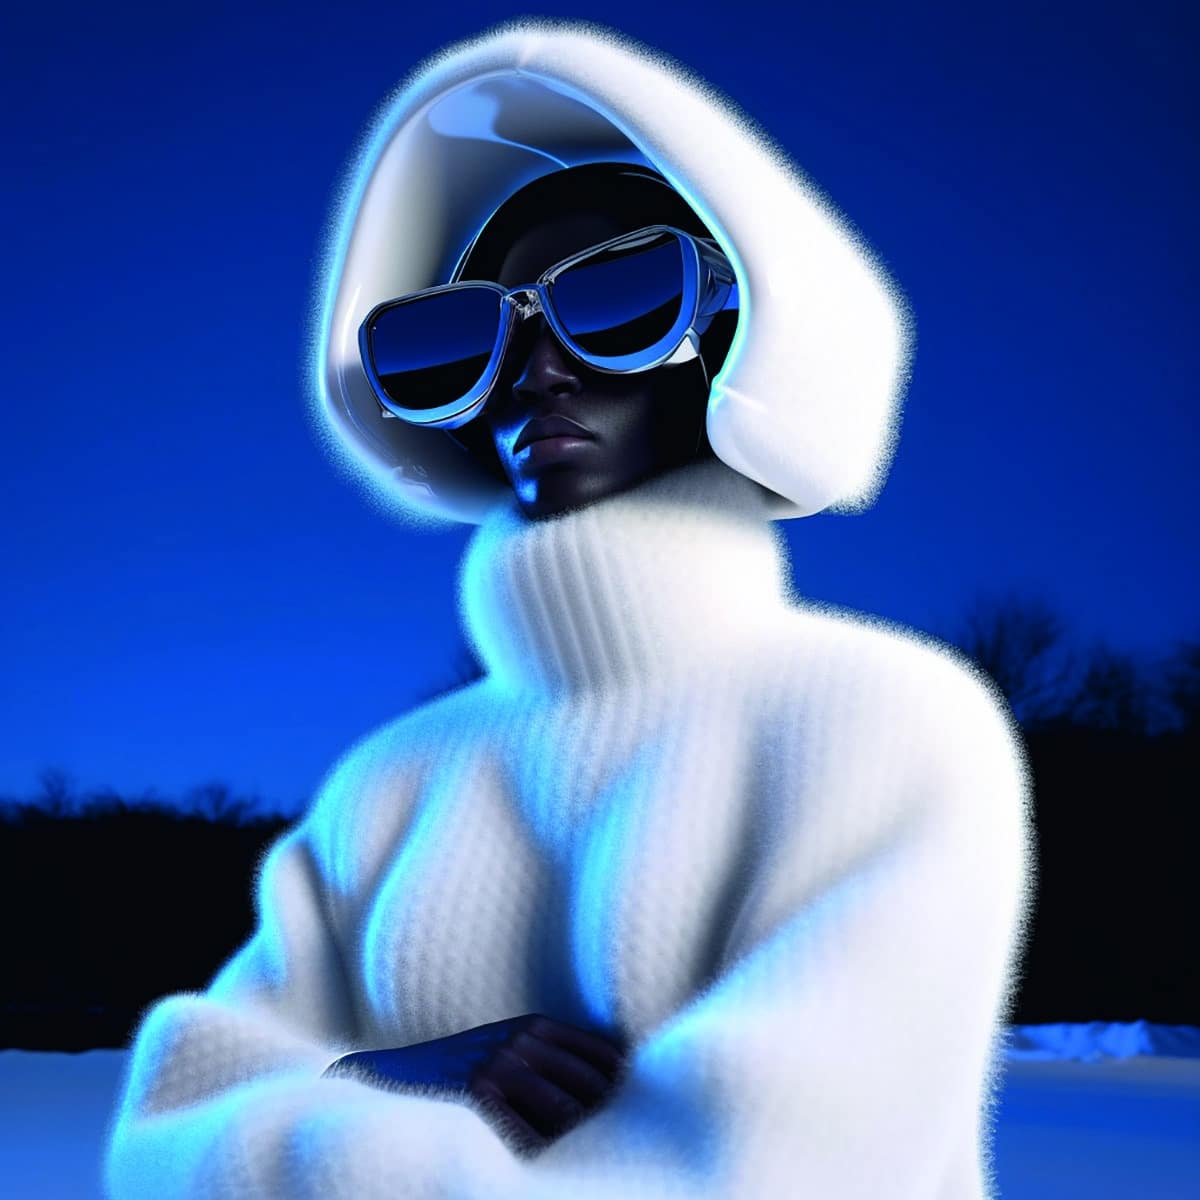 Ein Ki generiertes Bild von einem character in einer weißen flauschigen Jacke vor blauem Hintergrund